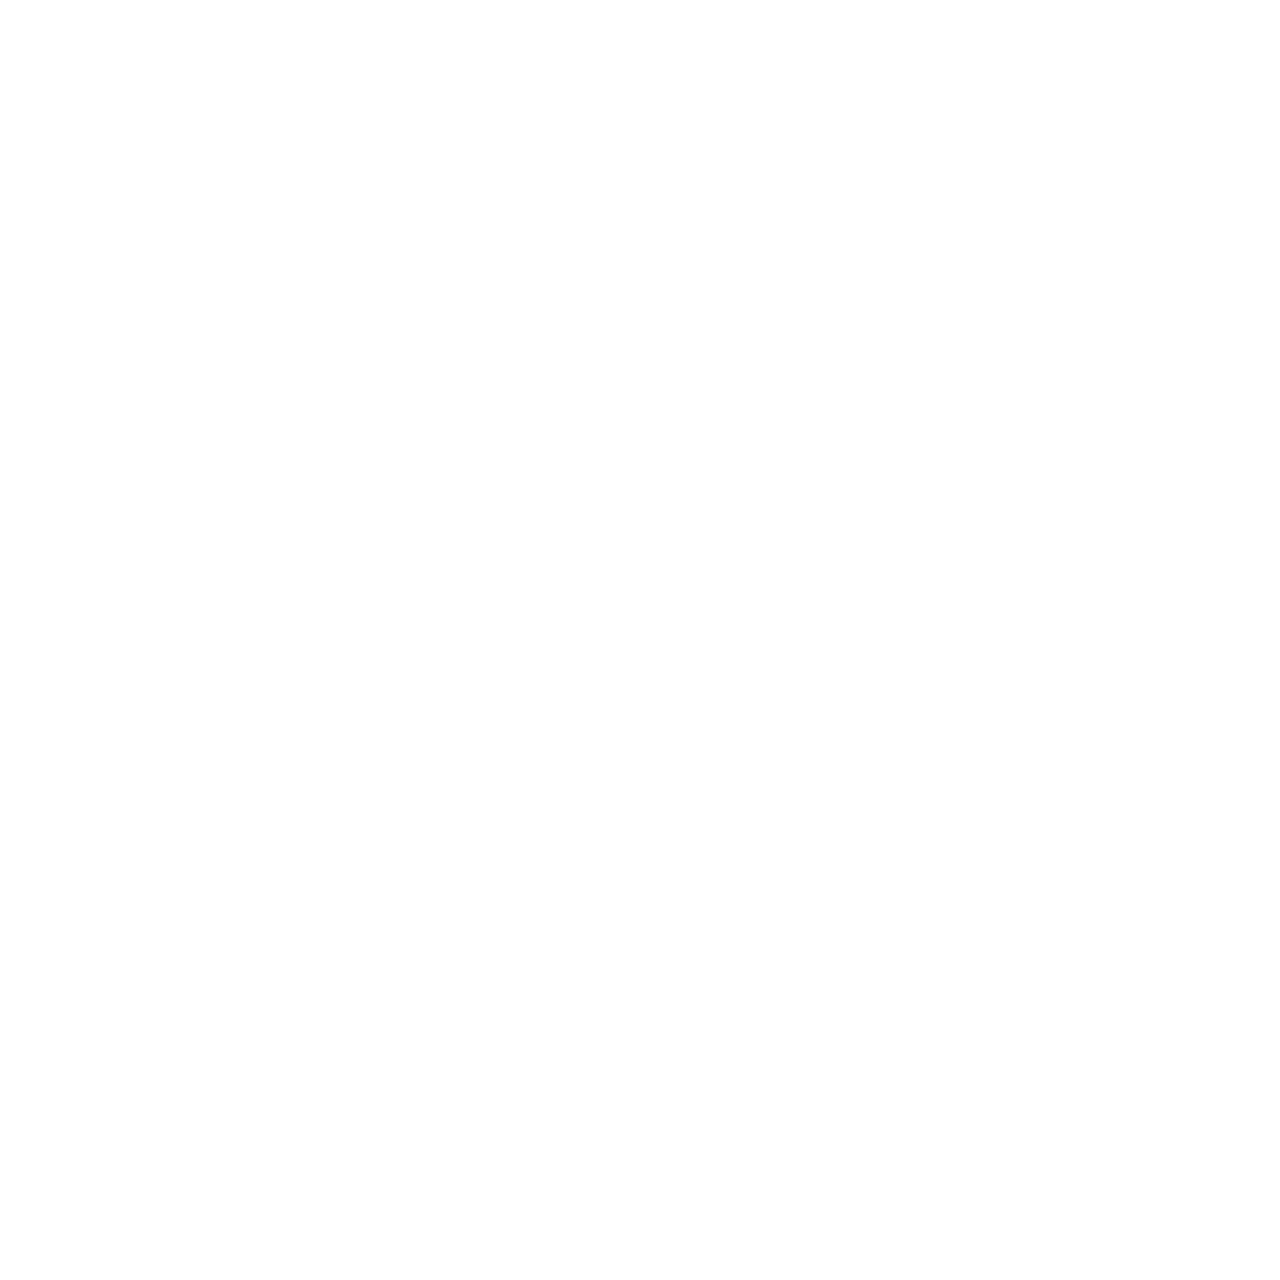 Institut de beauté I-SOA logo blc